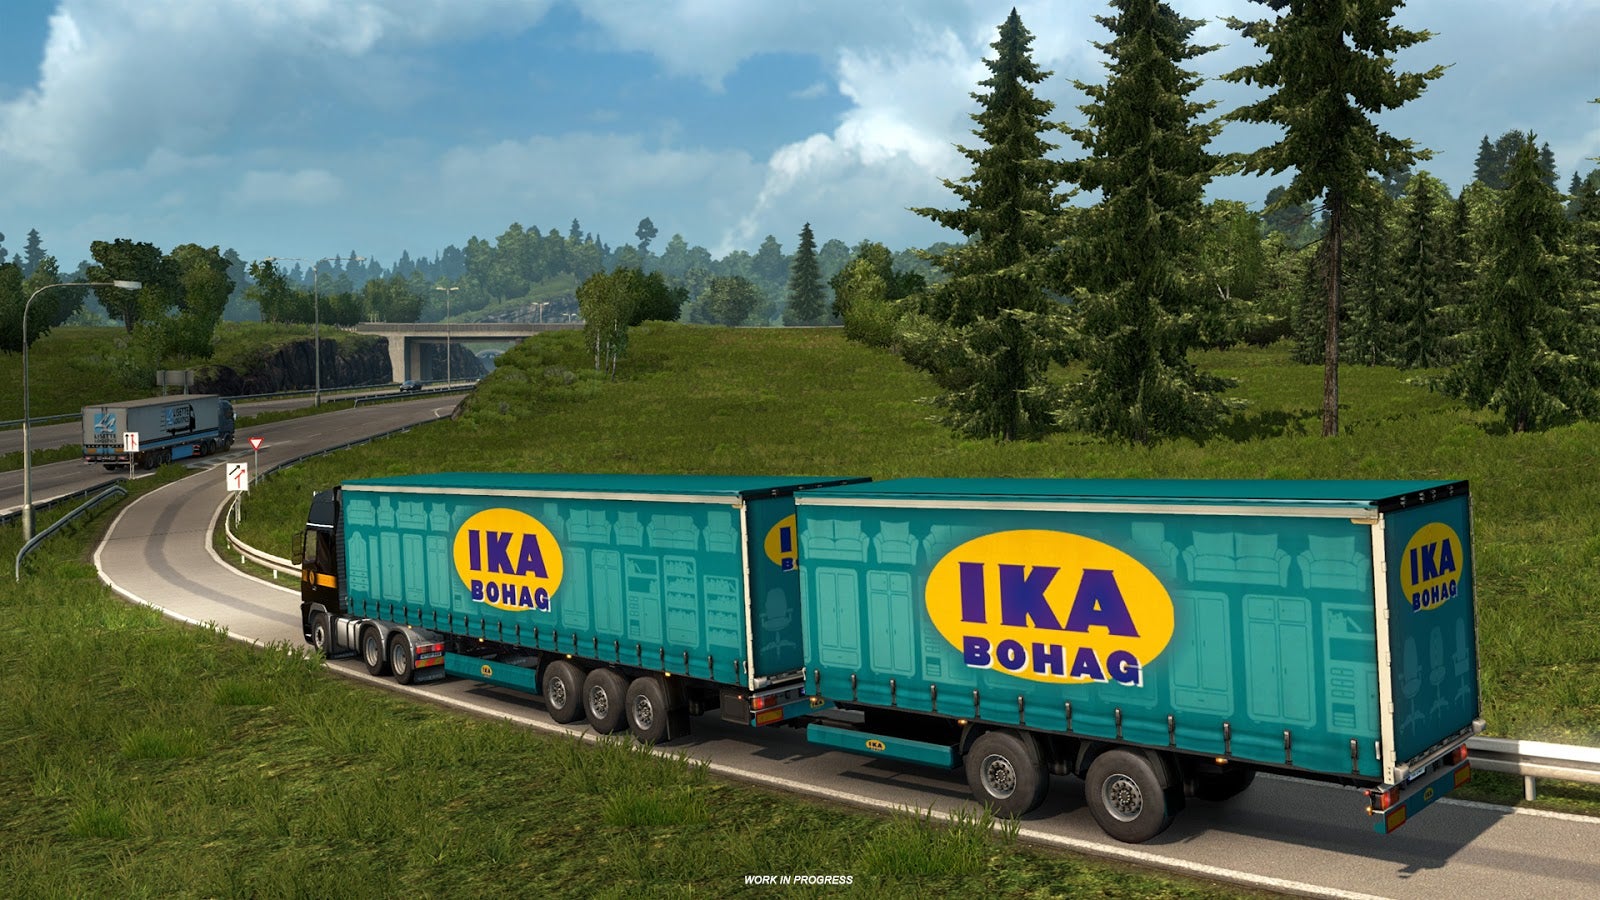 Obrazki dla Euro Truck Simulator 2 podwoi liczbę ciągniętych przyczep